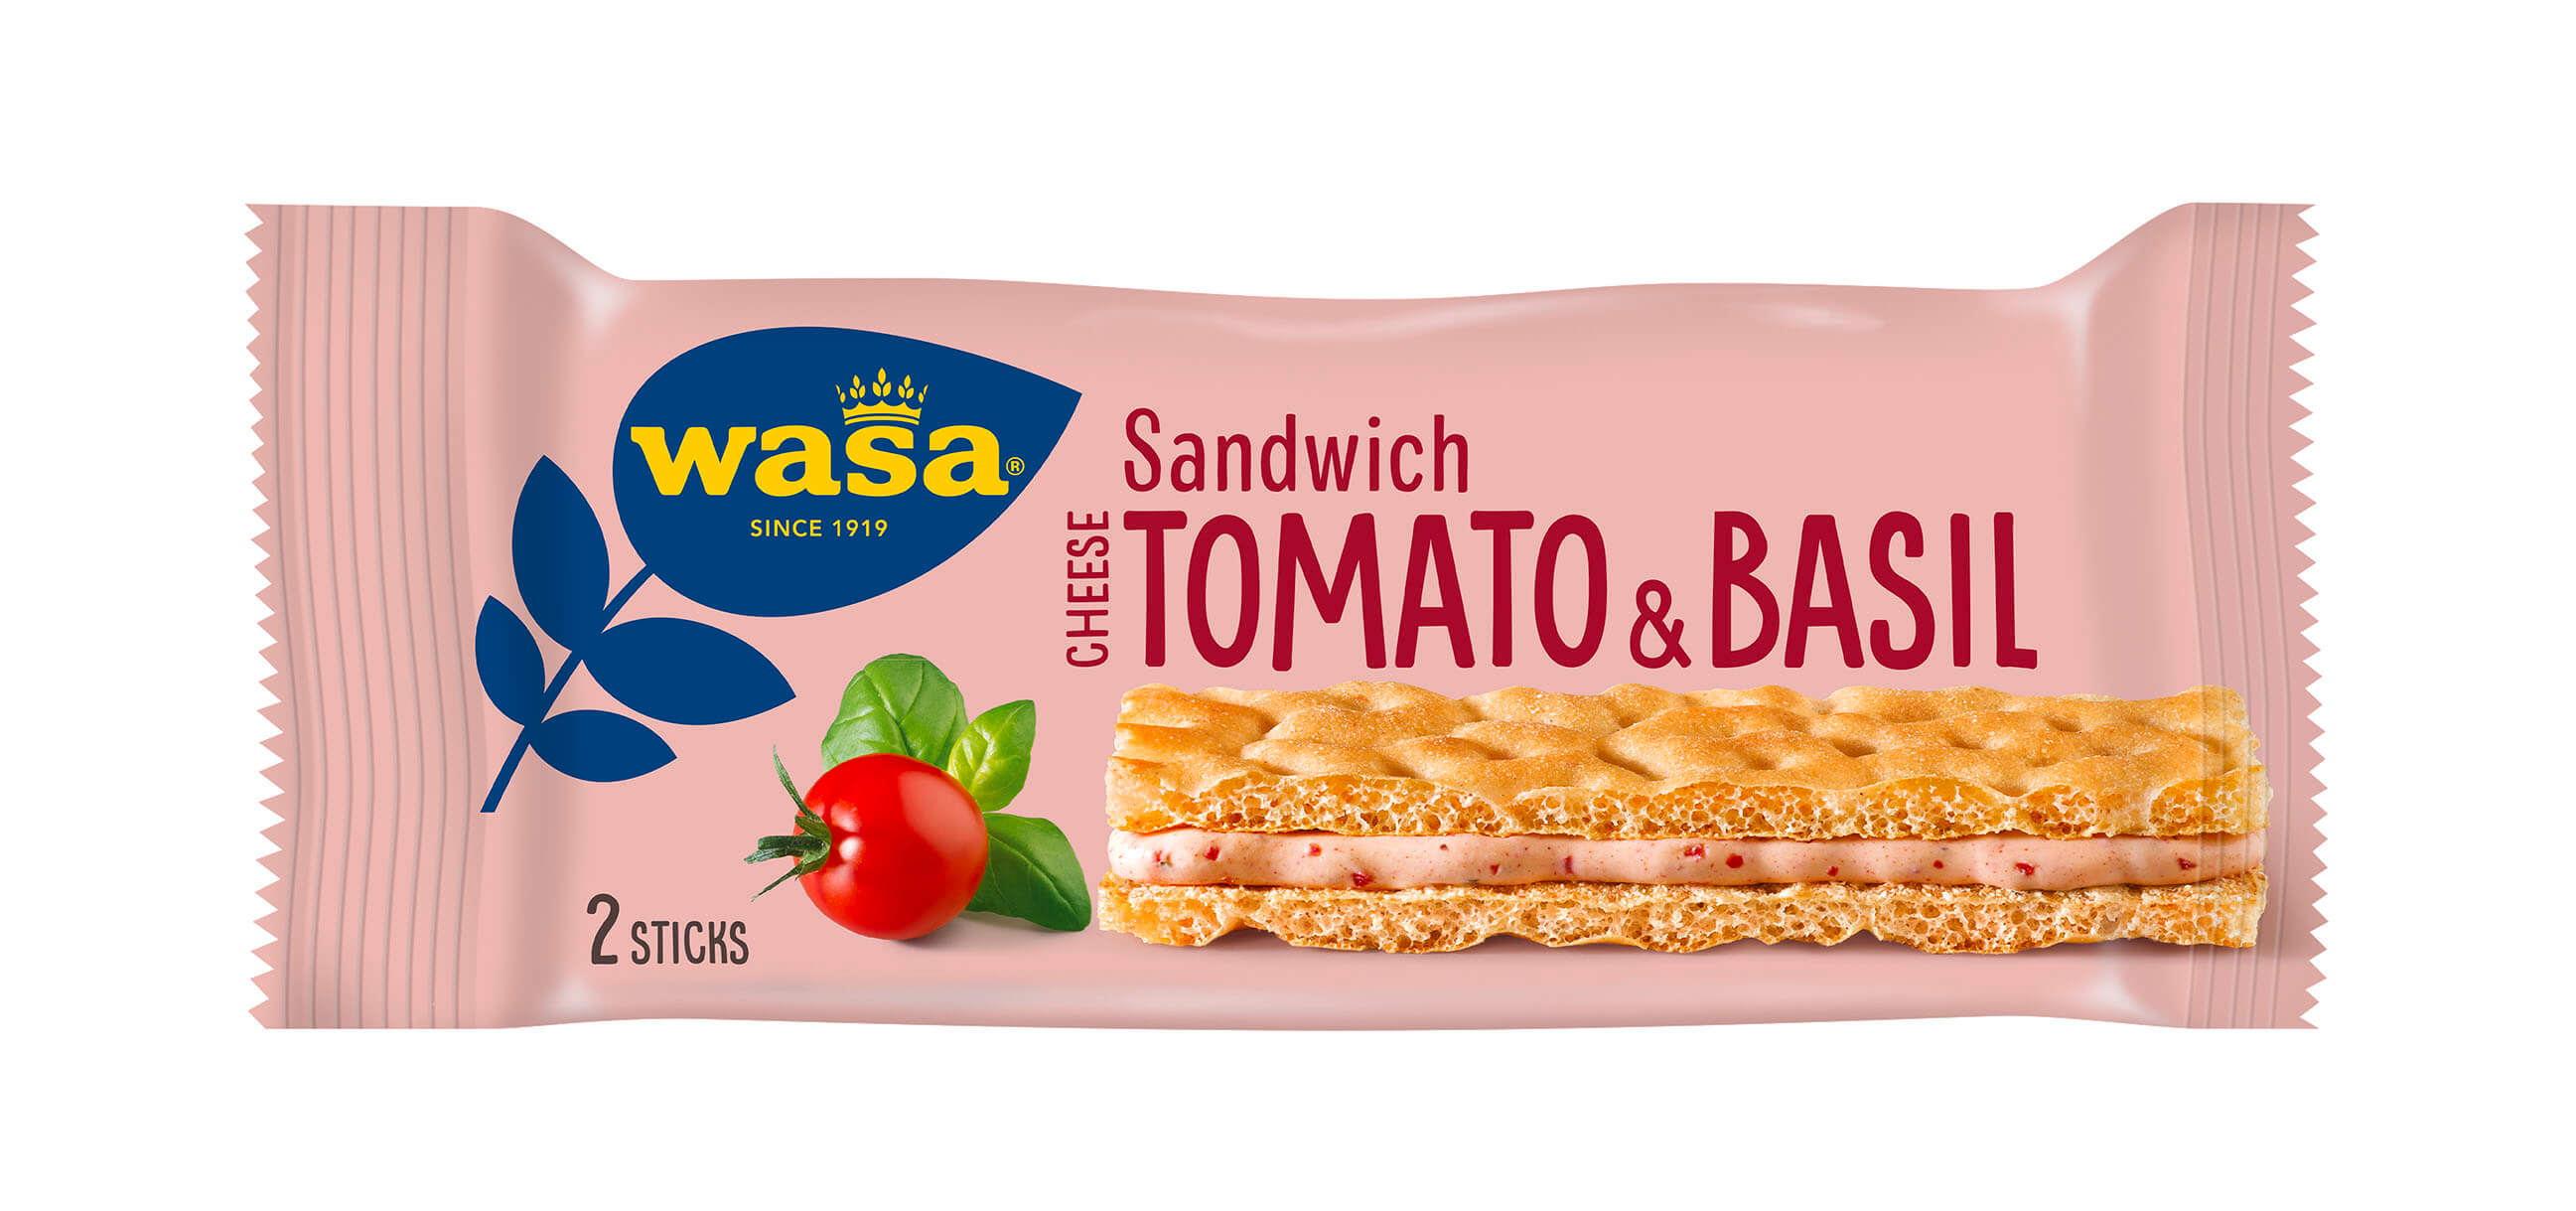 Wasa Sandwich Cheese, Tomato & Basil - Upptäck det perfekta mellanmålet, knäckebröd med krämig ostfyllning. Utmärkt som enkelt mellanmål när du är på språng och som goda mellanmål efter skolan